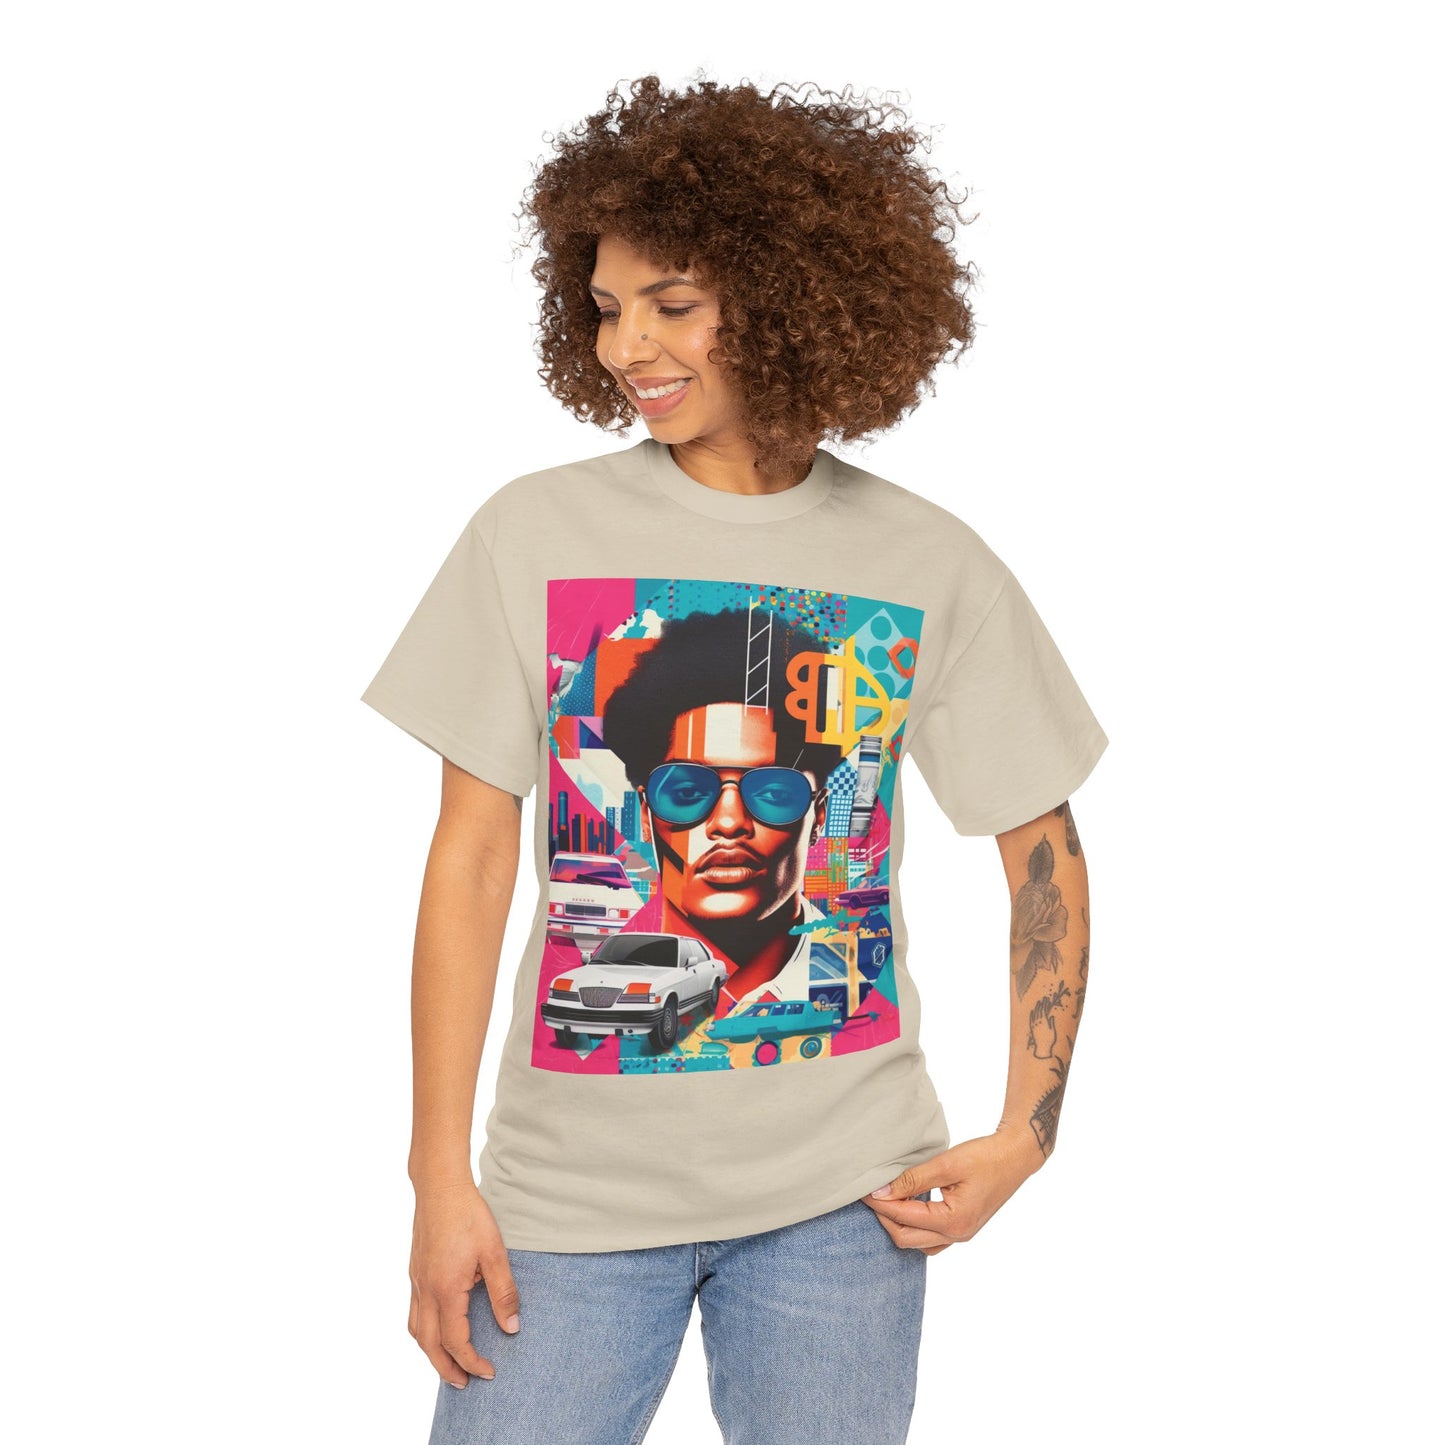 "Caribbean Jalen" T-shirt